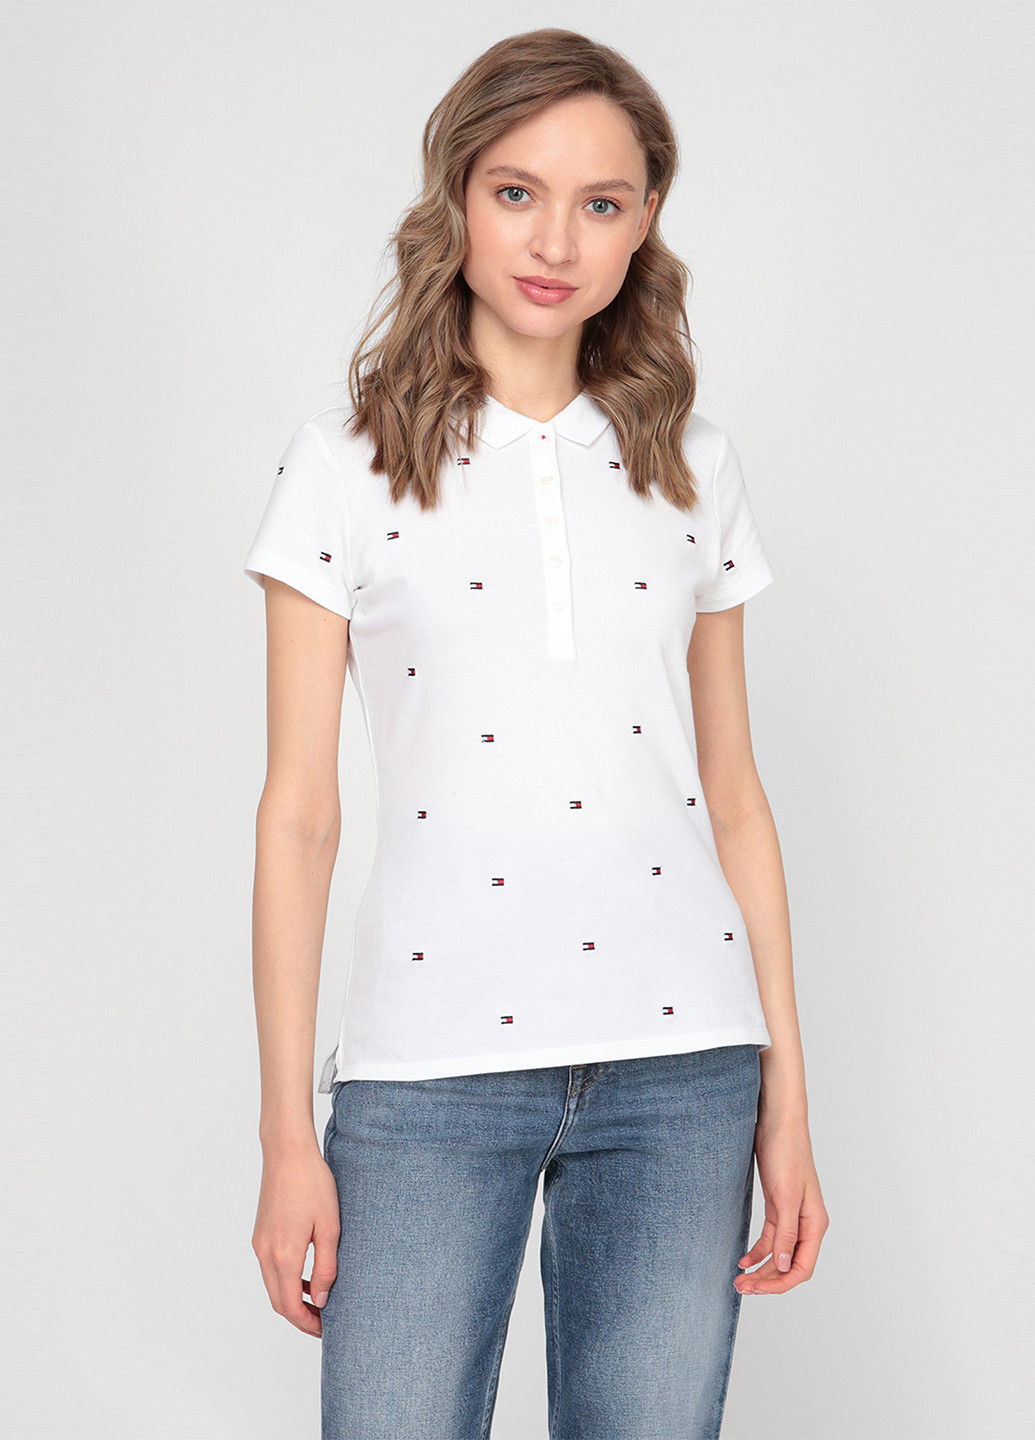 Белая женская футболка-поло Tommy Hilfiger с логотипом